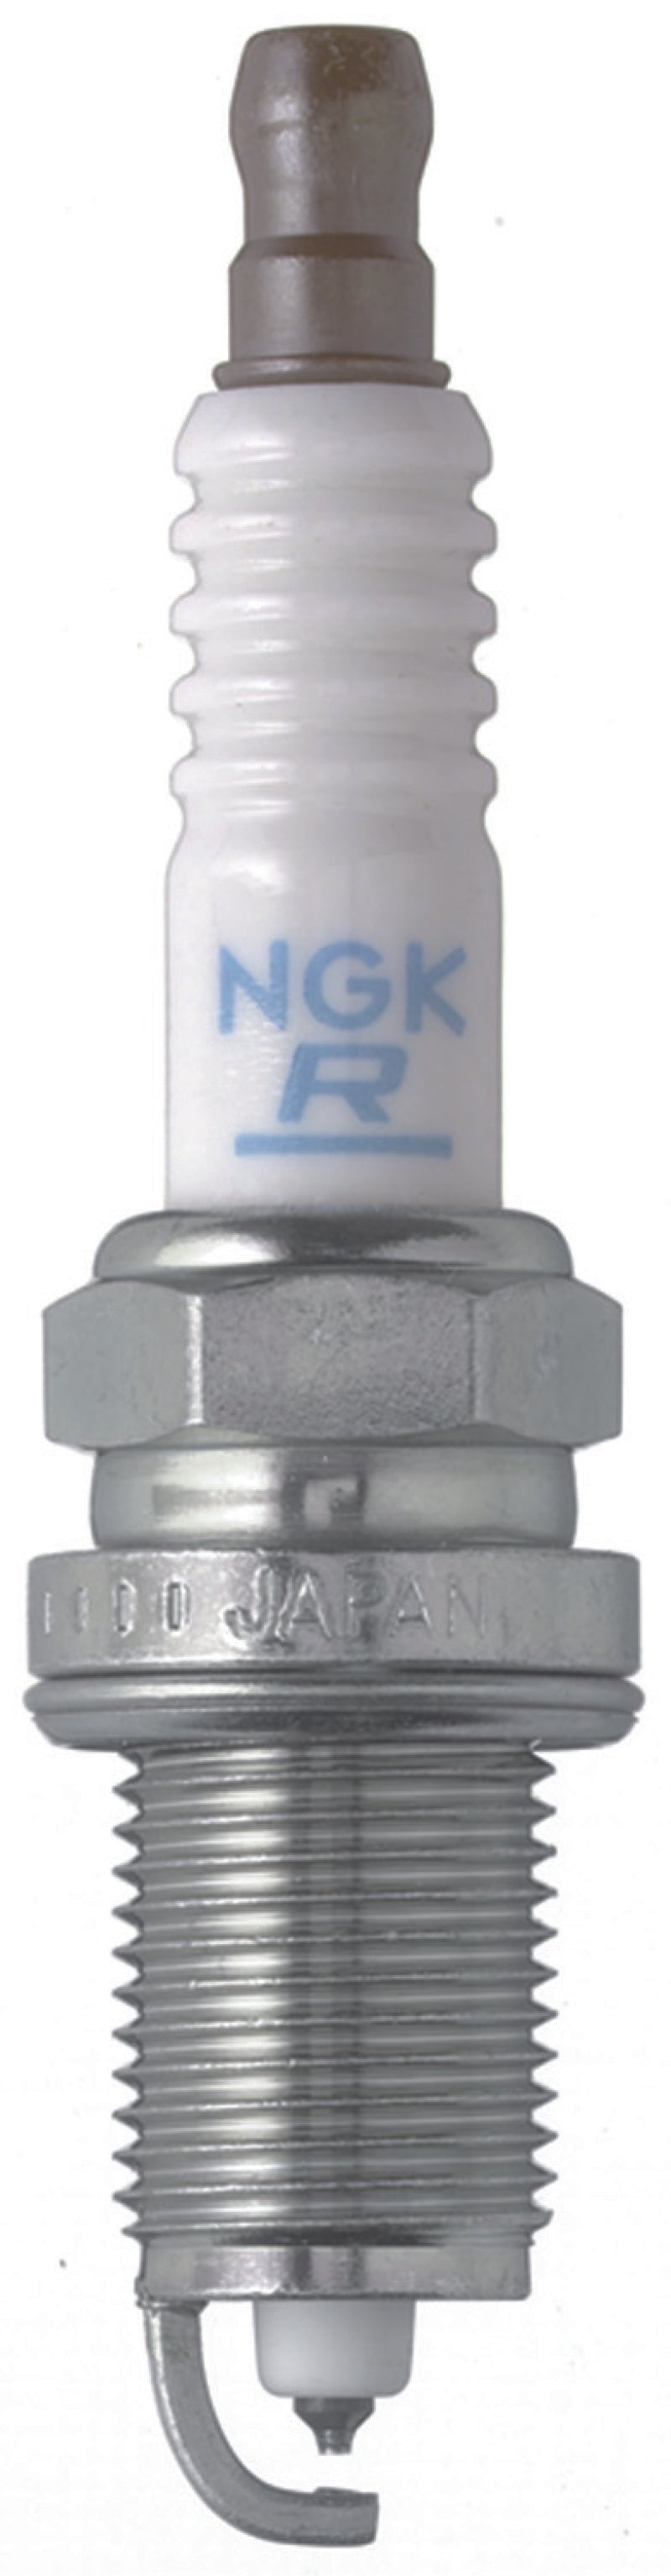 NGK Laser Platiumn Spark Plug Box of 4 (PZFR5D-11)